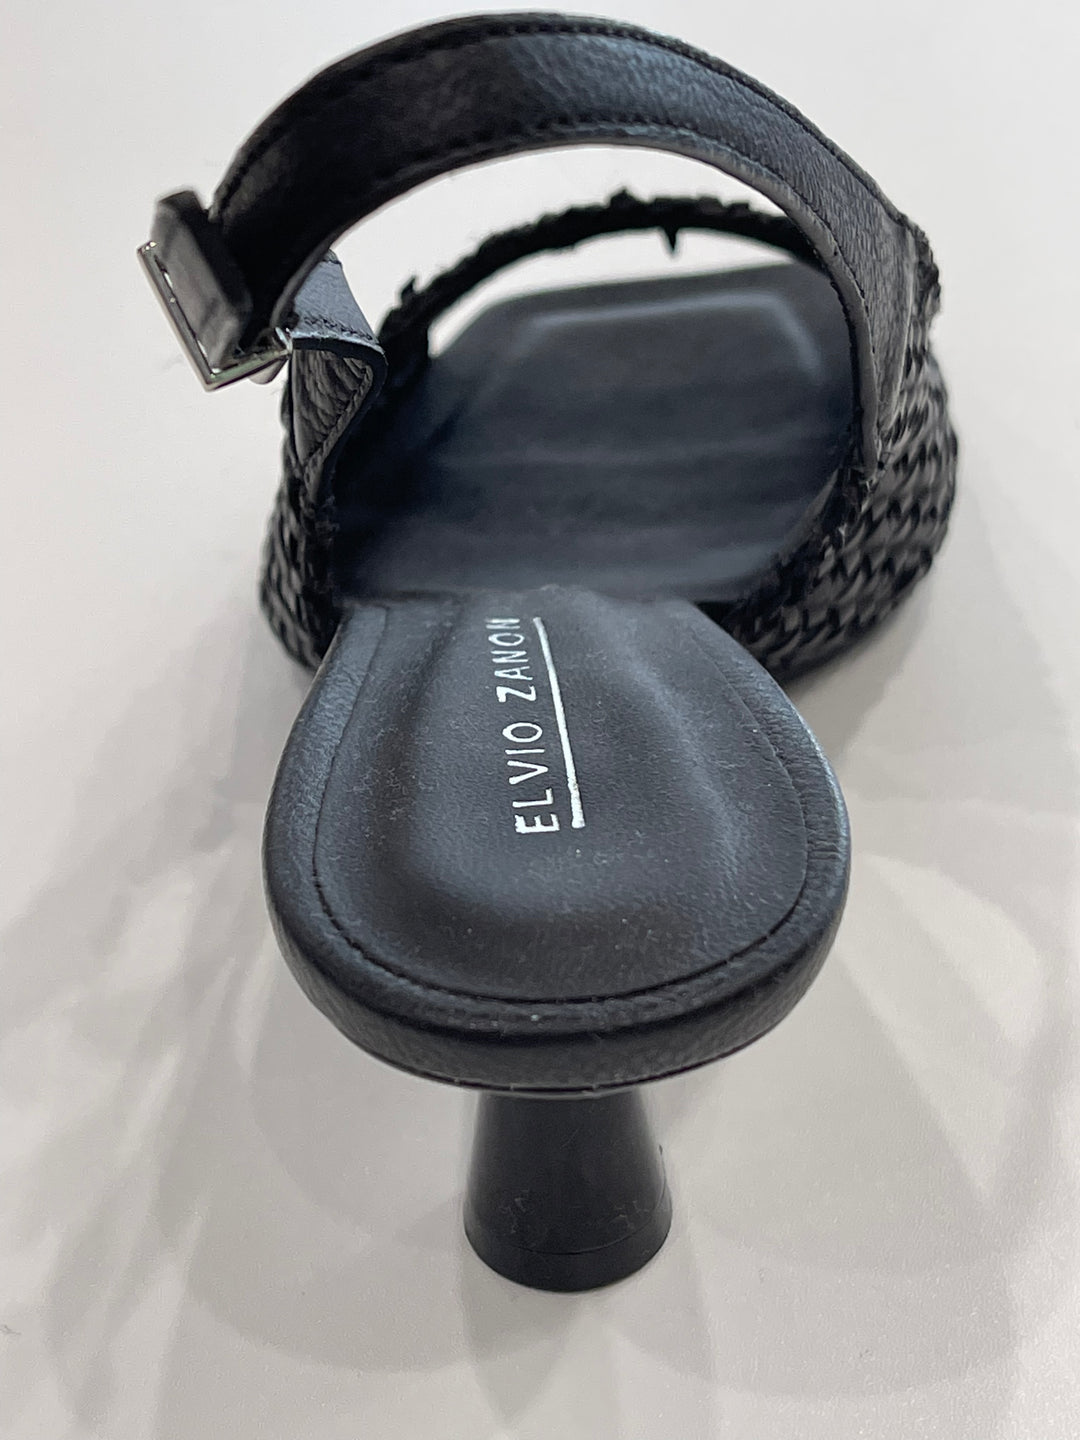 Elvio Zanon - Leather Shoes Black Shoes Elvio Zanon   